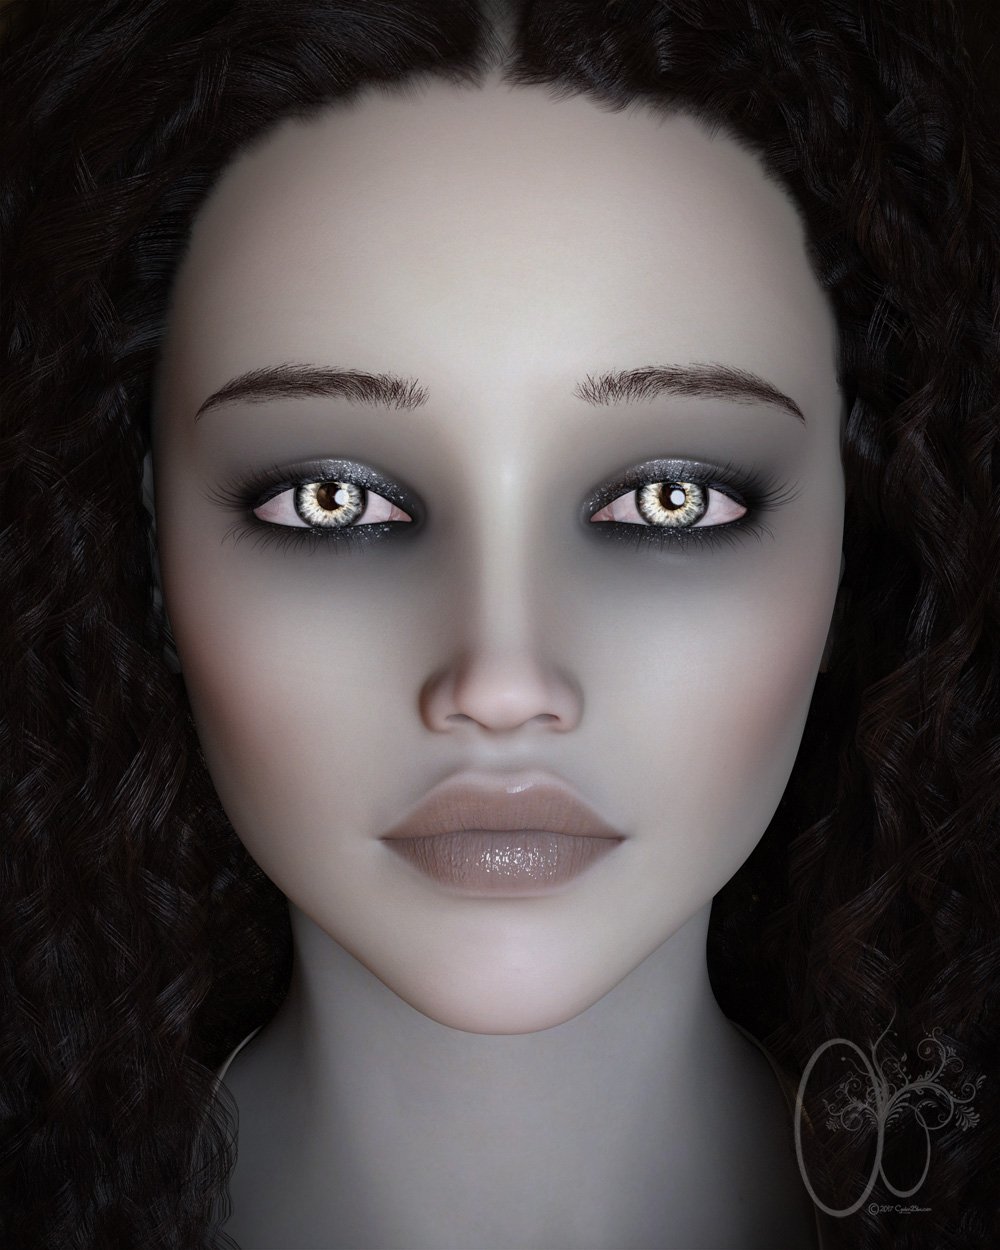 CB Savanah for Genesis 8 Female by: CynderBlue, 3D Models by Daz 3D